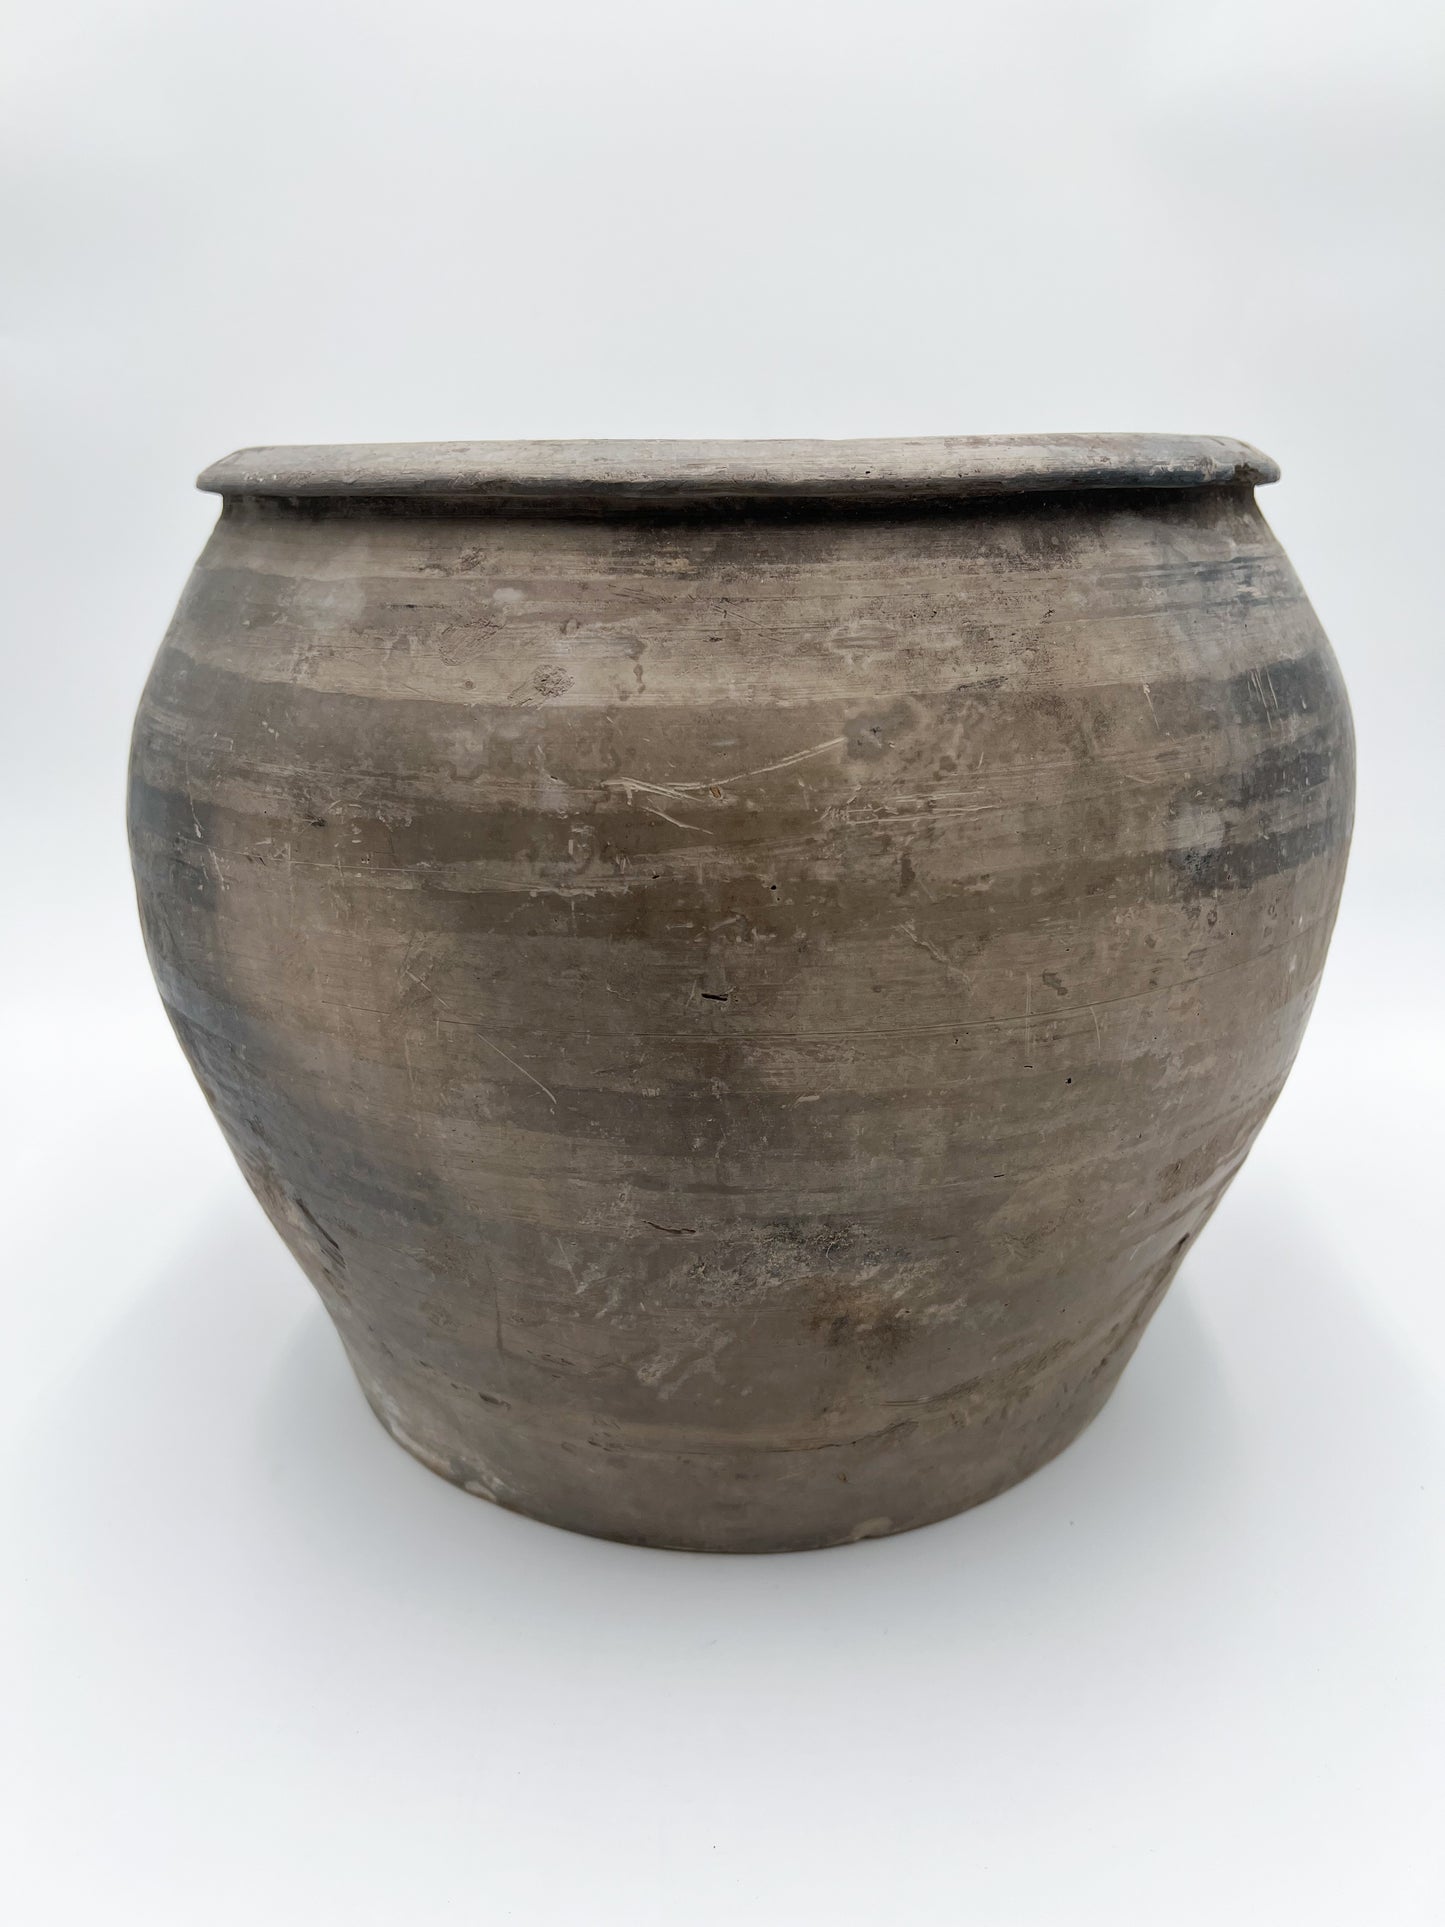 Large Vintage Pot - One of a Kind (SKU: 41)